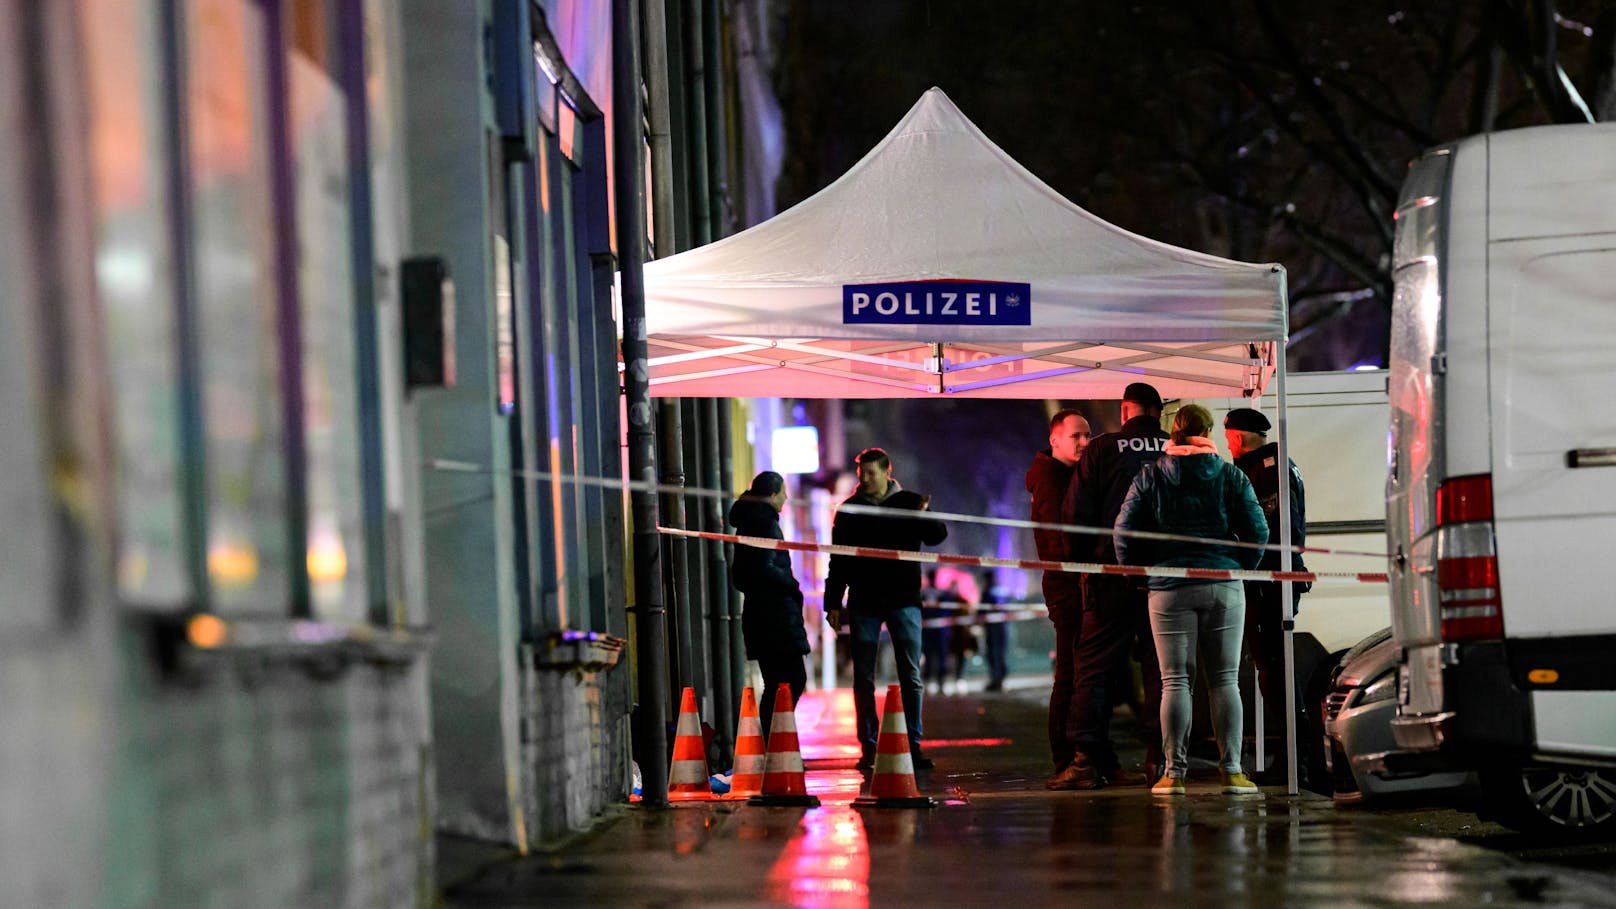 Ehre, Rache, Messer – darum tobt Banden-Krieg in Wien